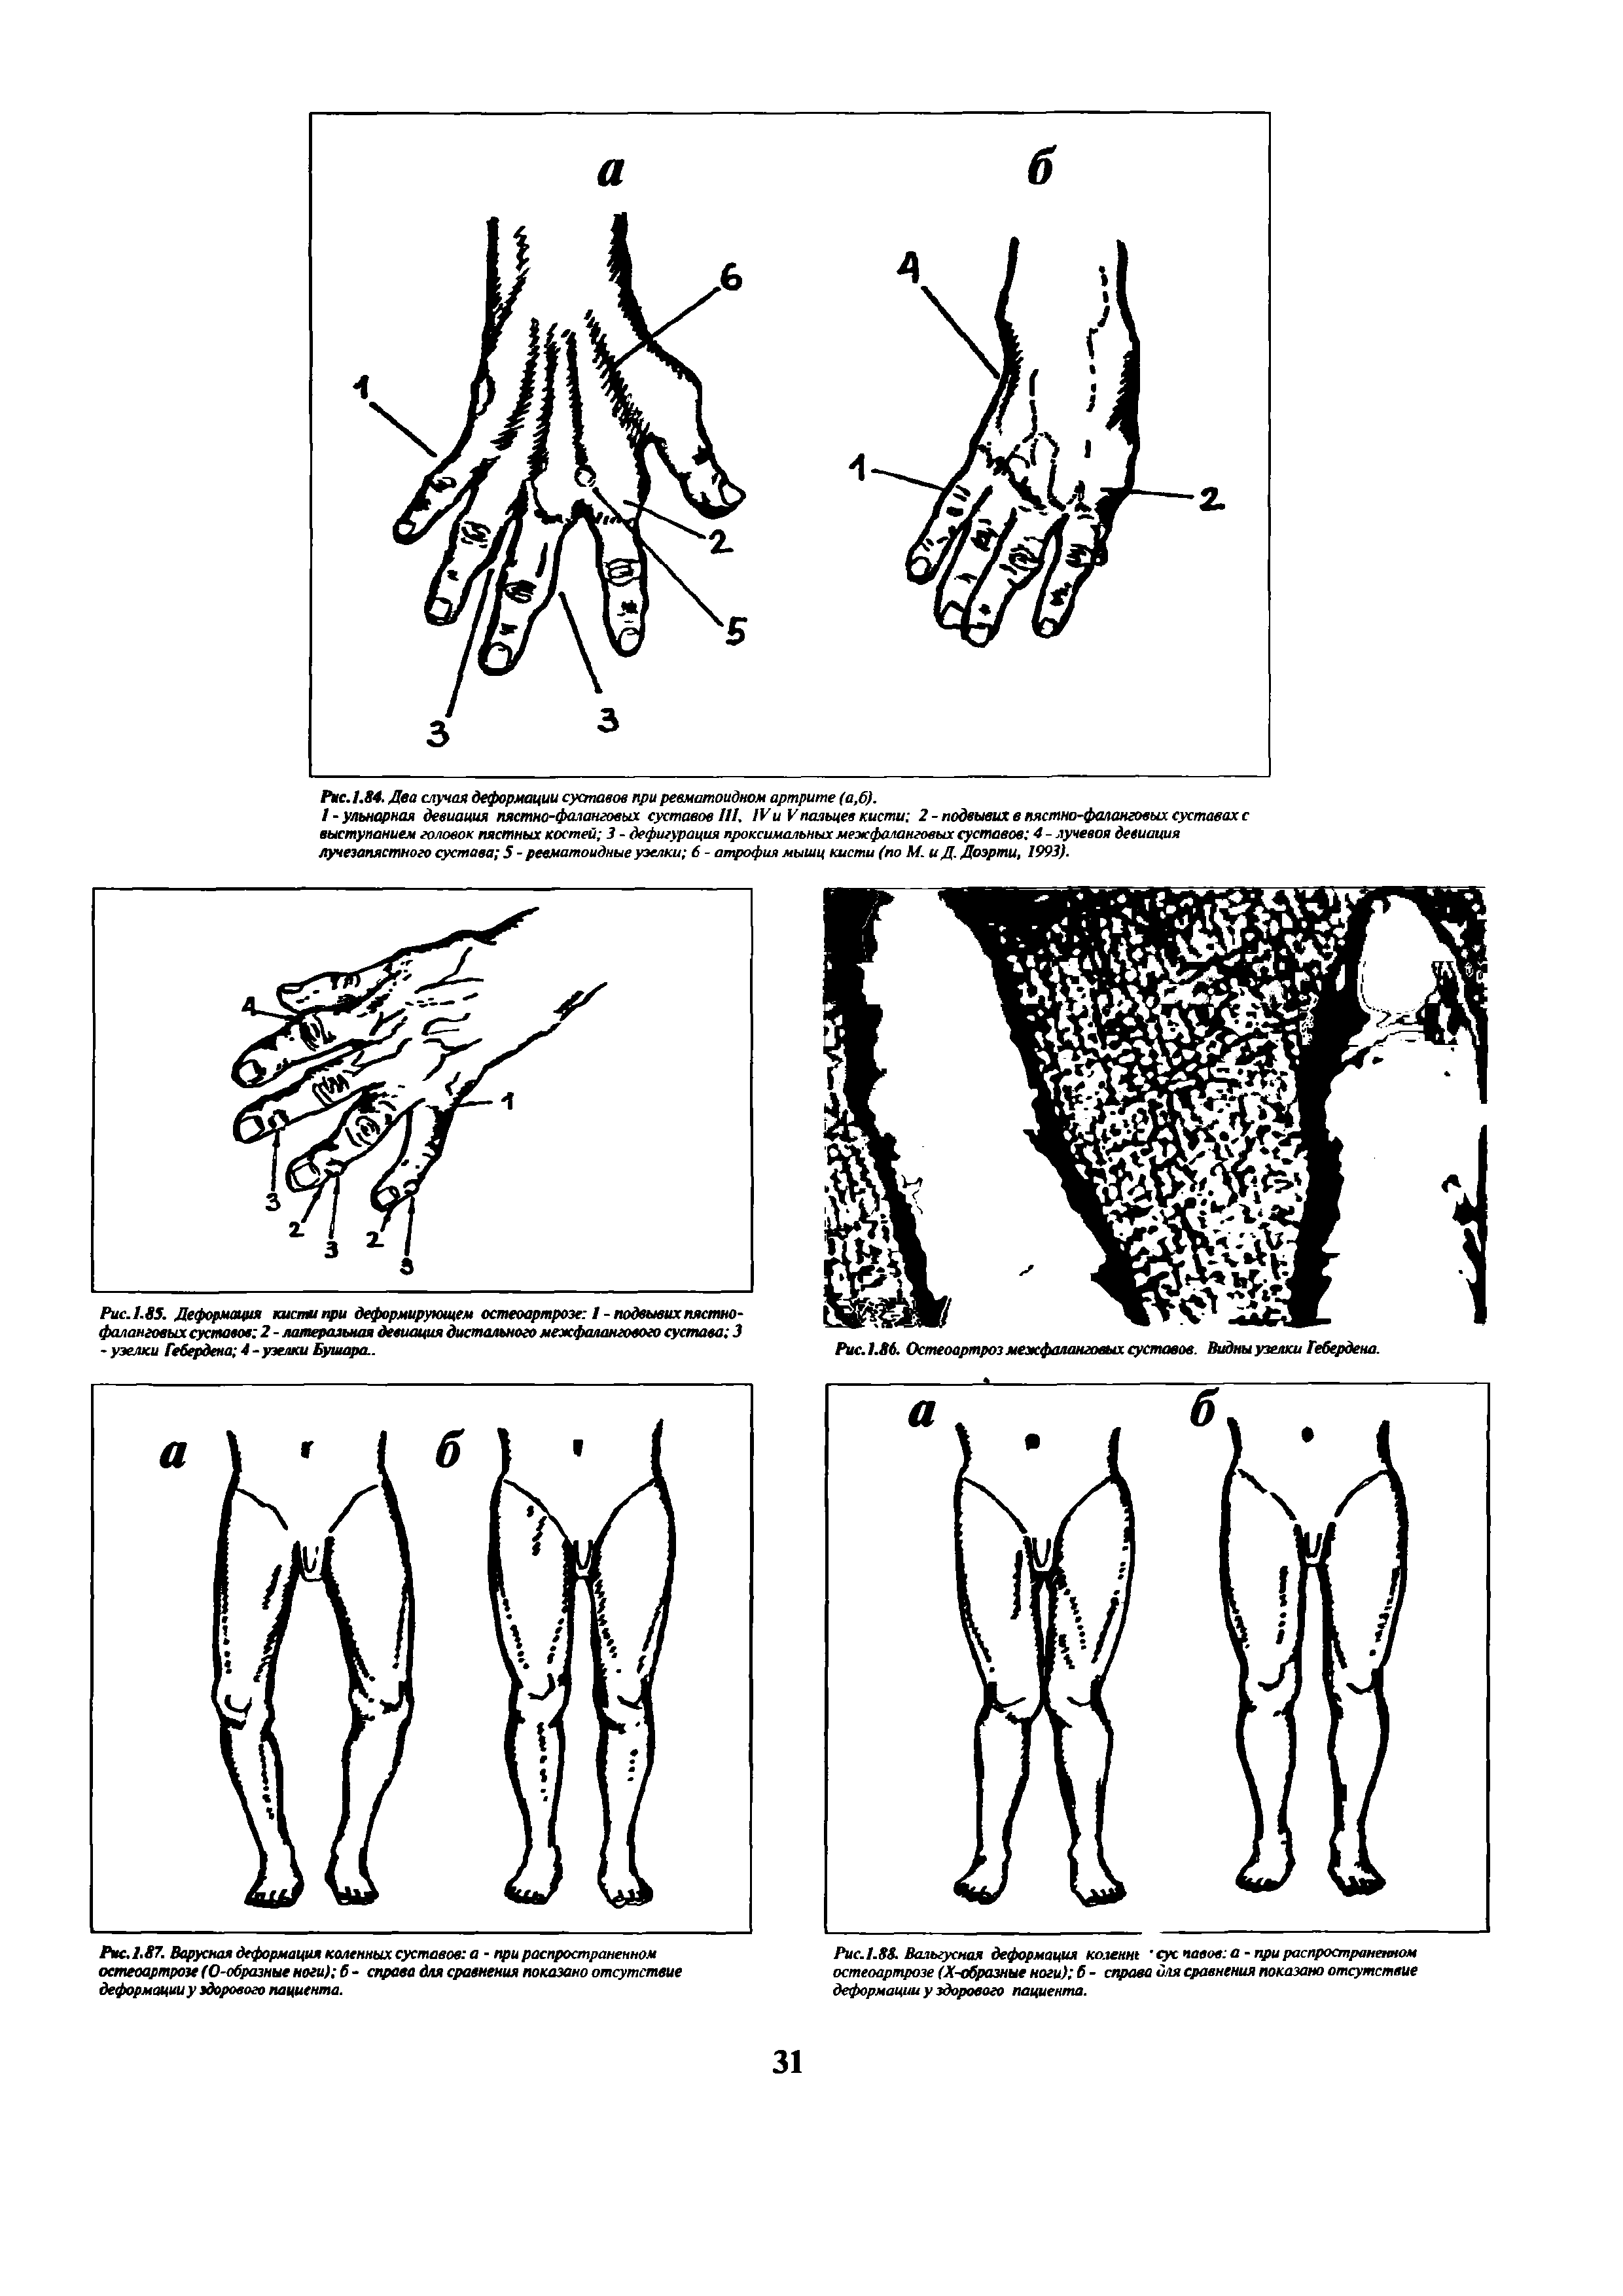 Рис.1.88 Вальгусная деформация колент сус павов а - при распространенном остеоартрозе (Х-образные ноги) б - справа иля сравнения показано отсутствие деформации у здорового пациента.